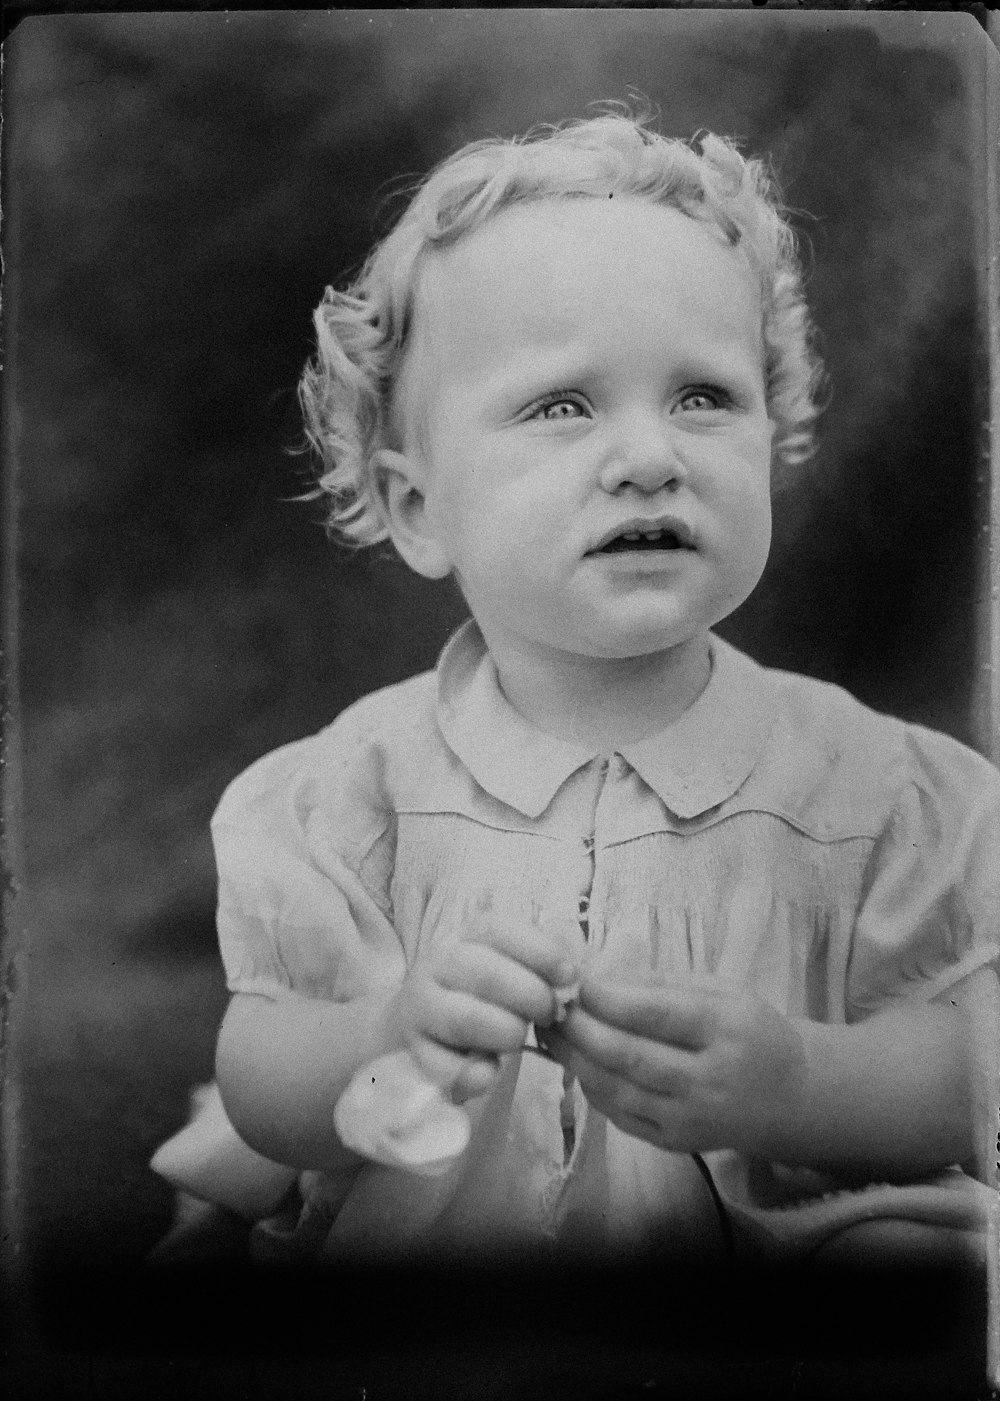 Fotografía en escala de grises de un niño pequeño